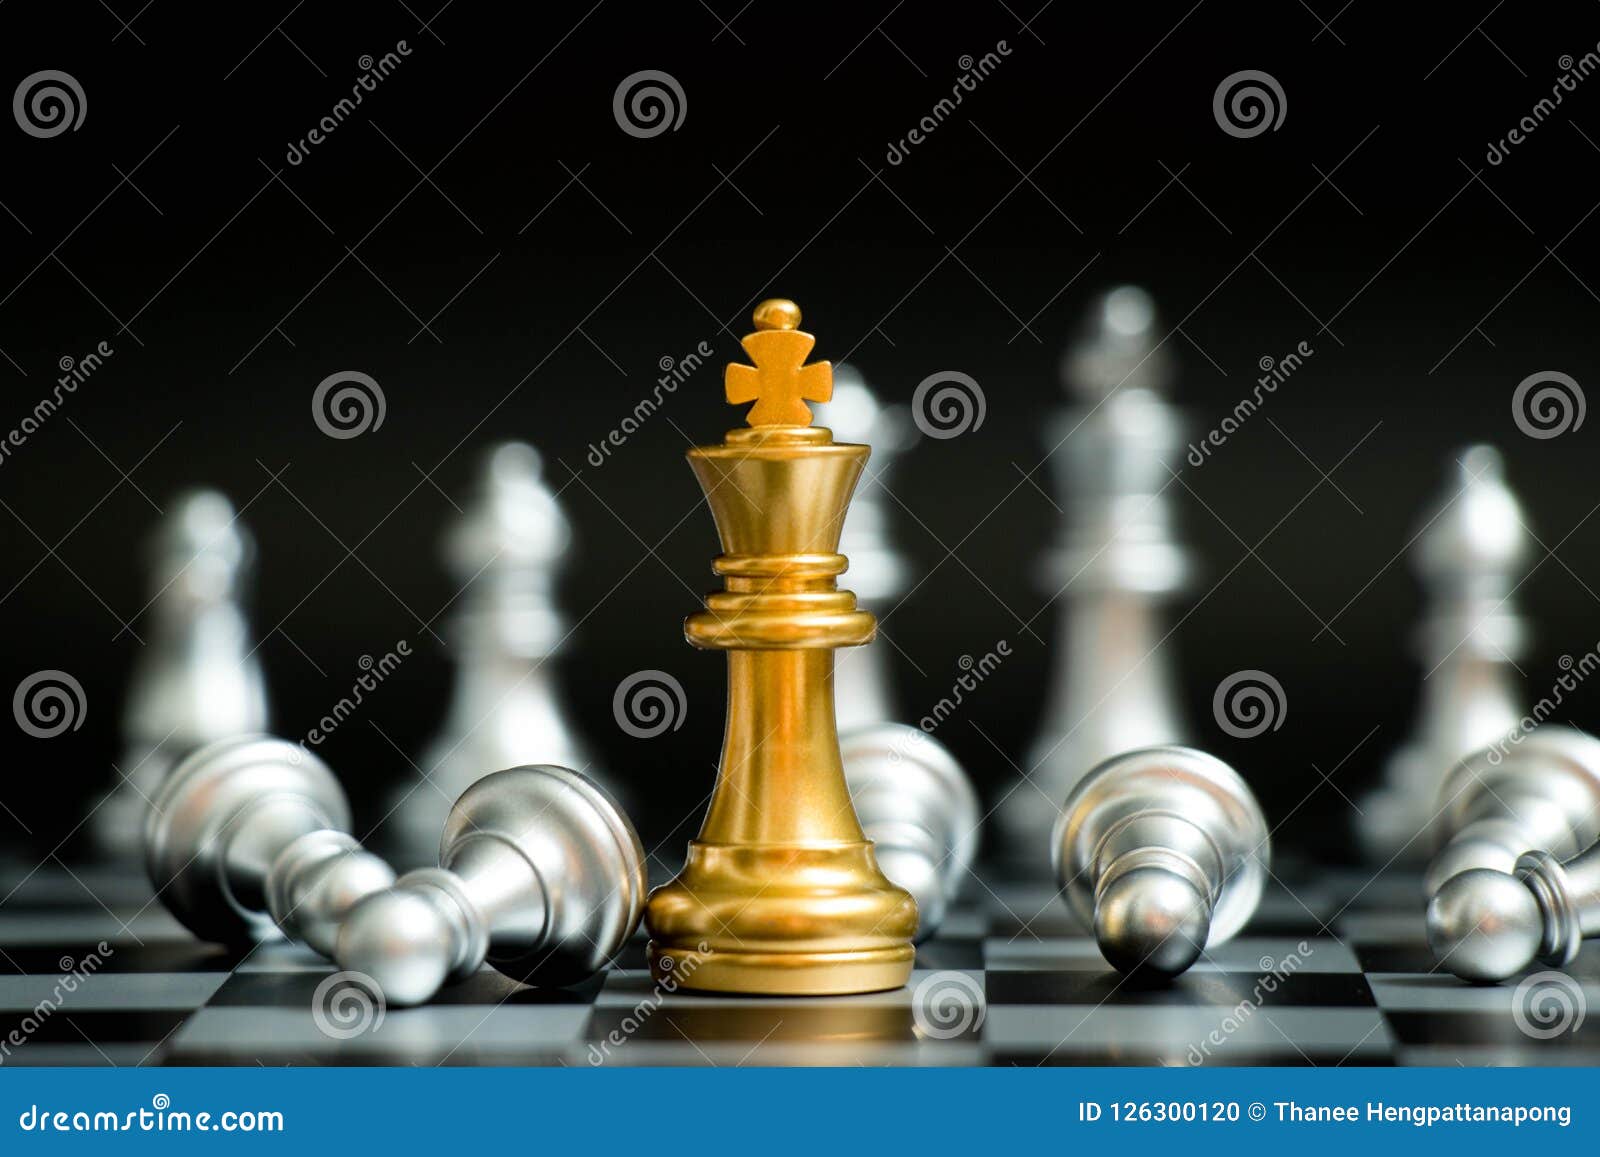 Posição do rei do ouro do jogo de xadrez e tabuleiro de xadrez de prata,  conceito da estratégia empresarial.